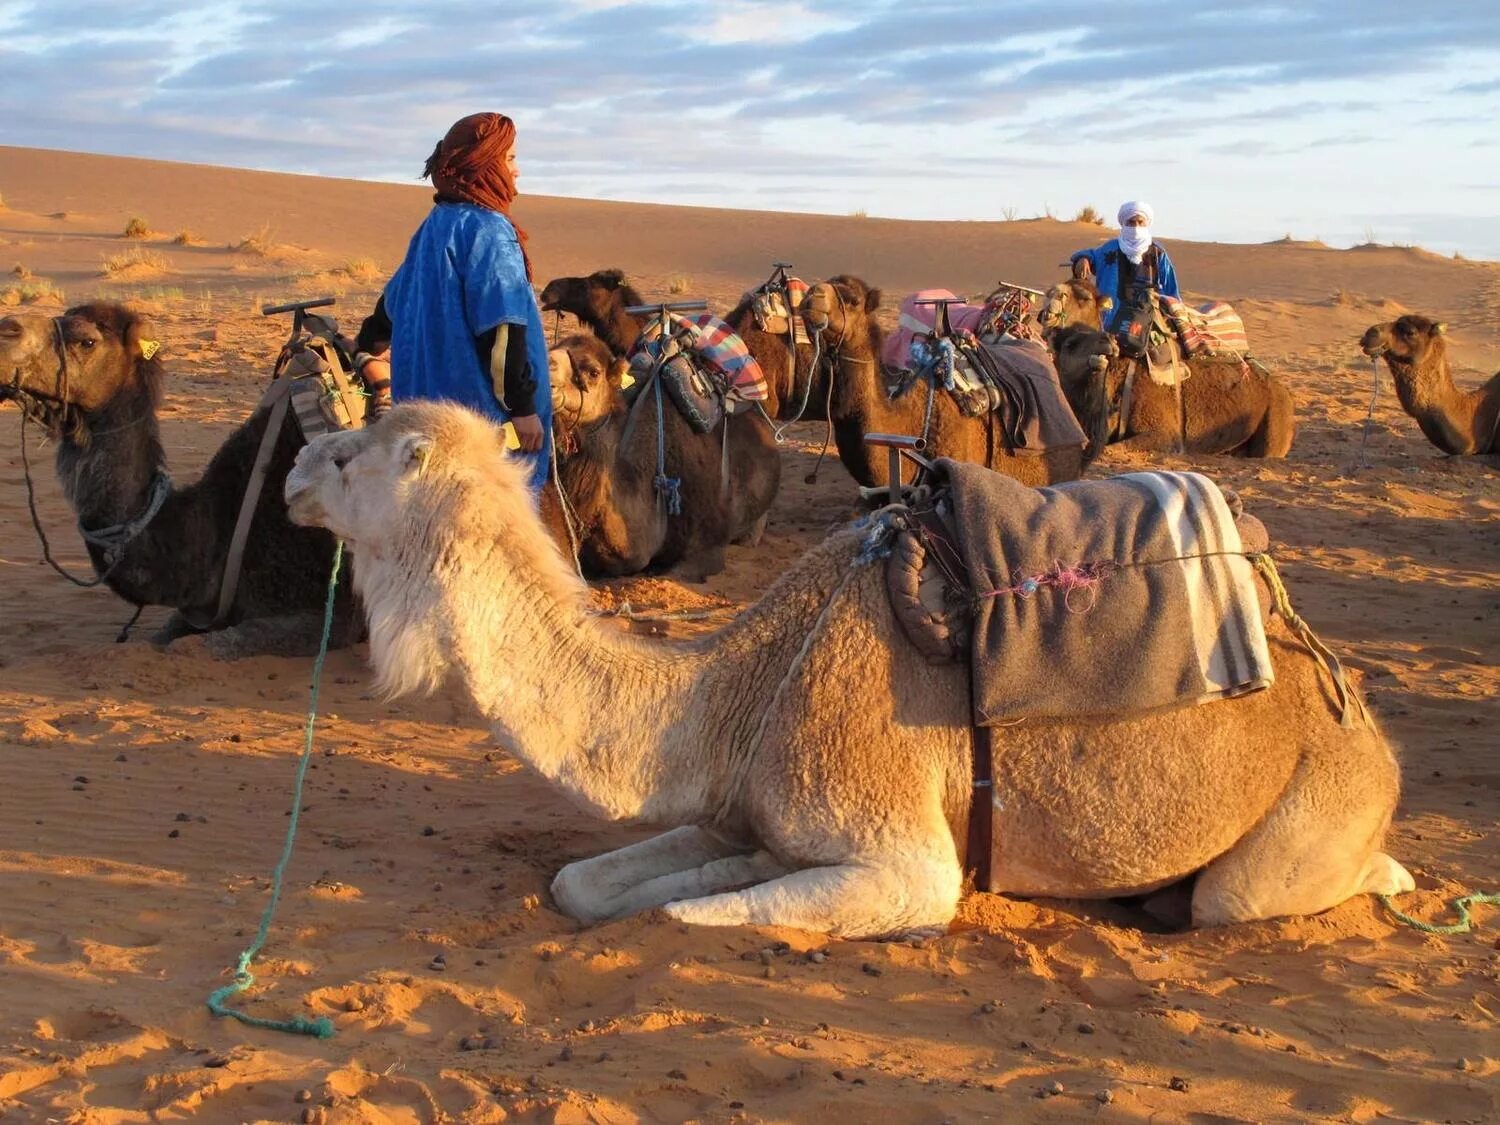 Караван сегодня. Бедуины Марокко. Караван в пустыне Каракум. Караваны верблюдов с бедуинами. Караван марокканских верблюдов дромедаров.